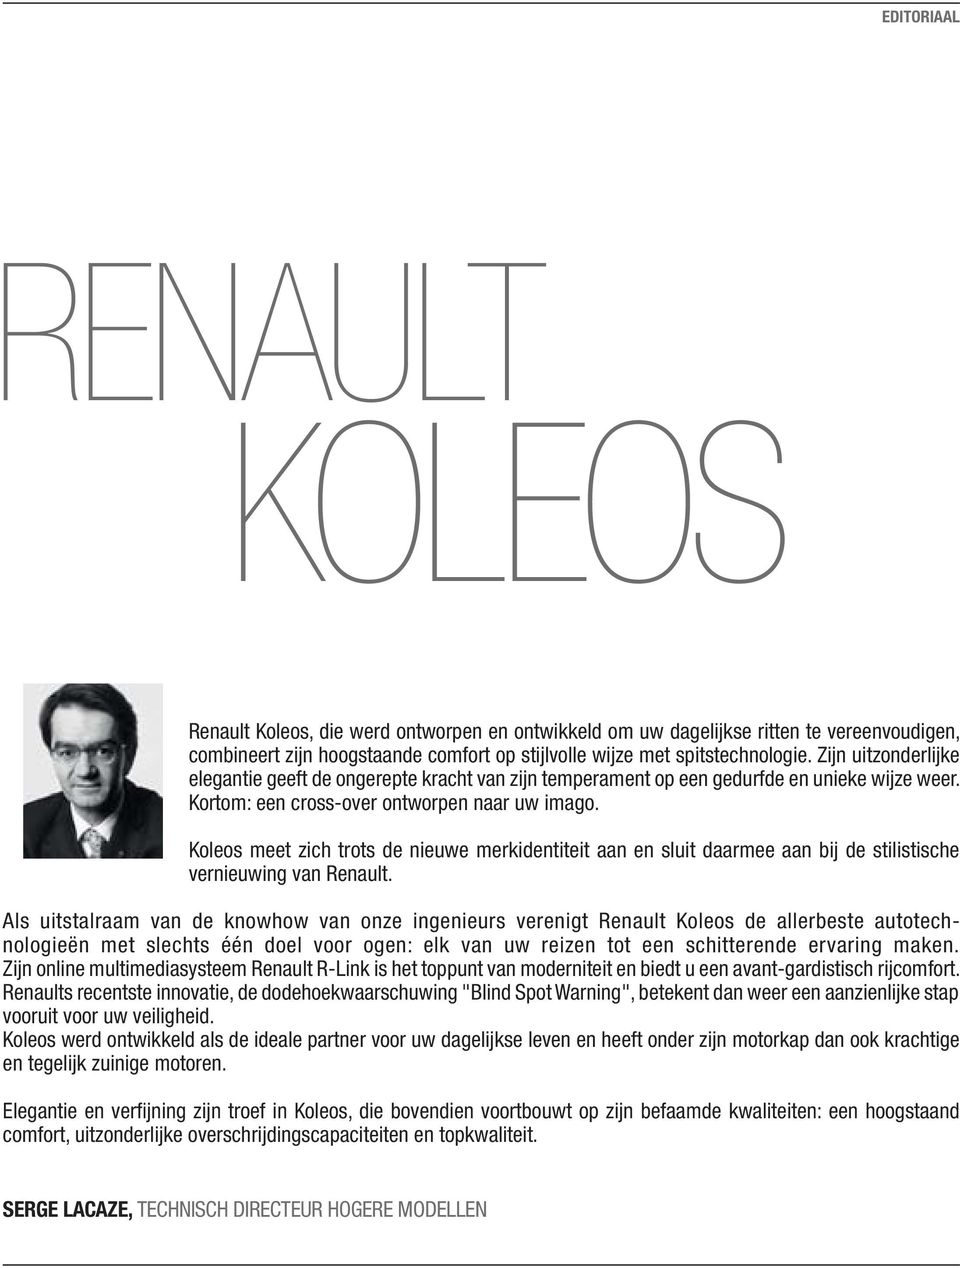 Koleos meet zich trots de nieuwe merkidentiteit aan en sluit daarmee aan bij de stilistische vernieuwing van Renault.